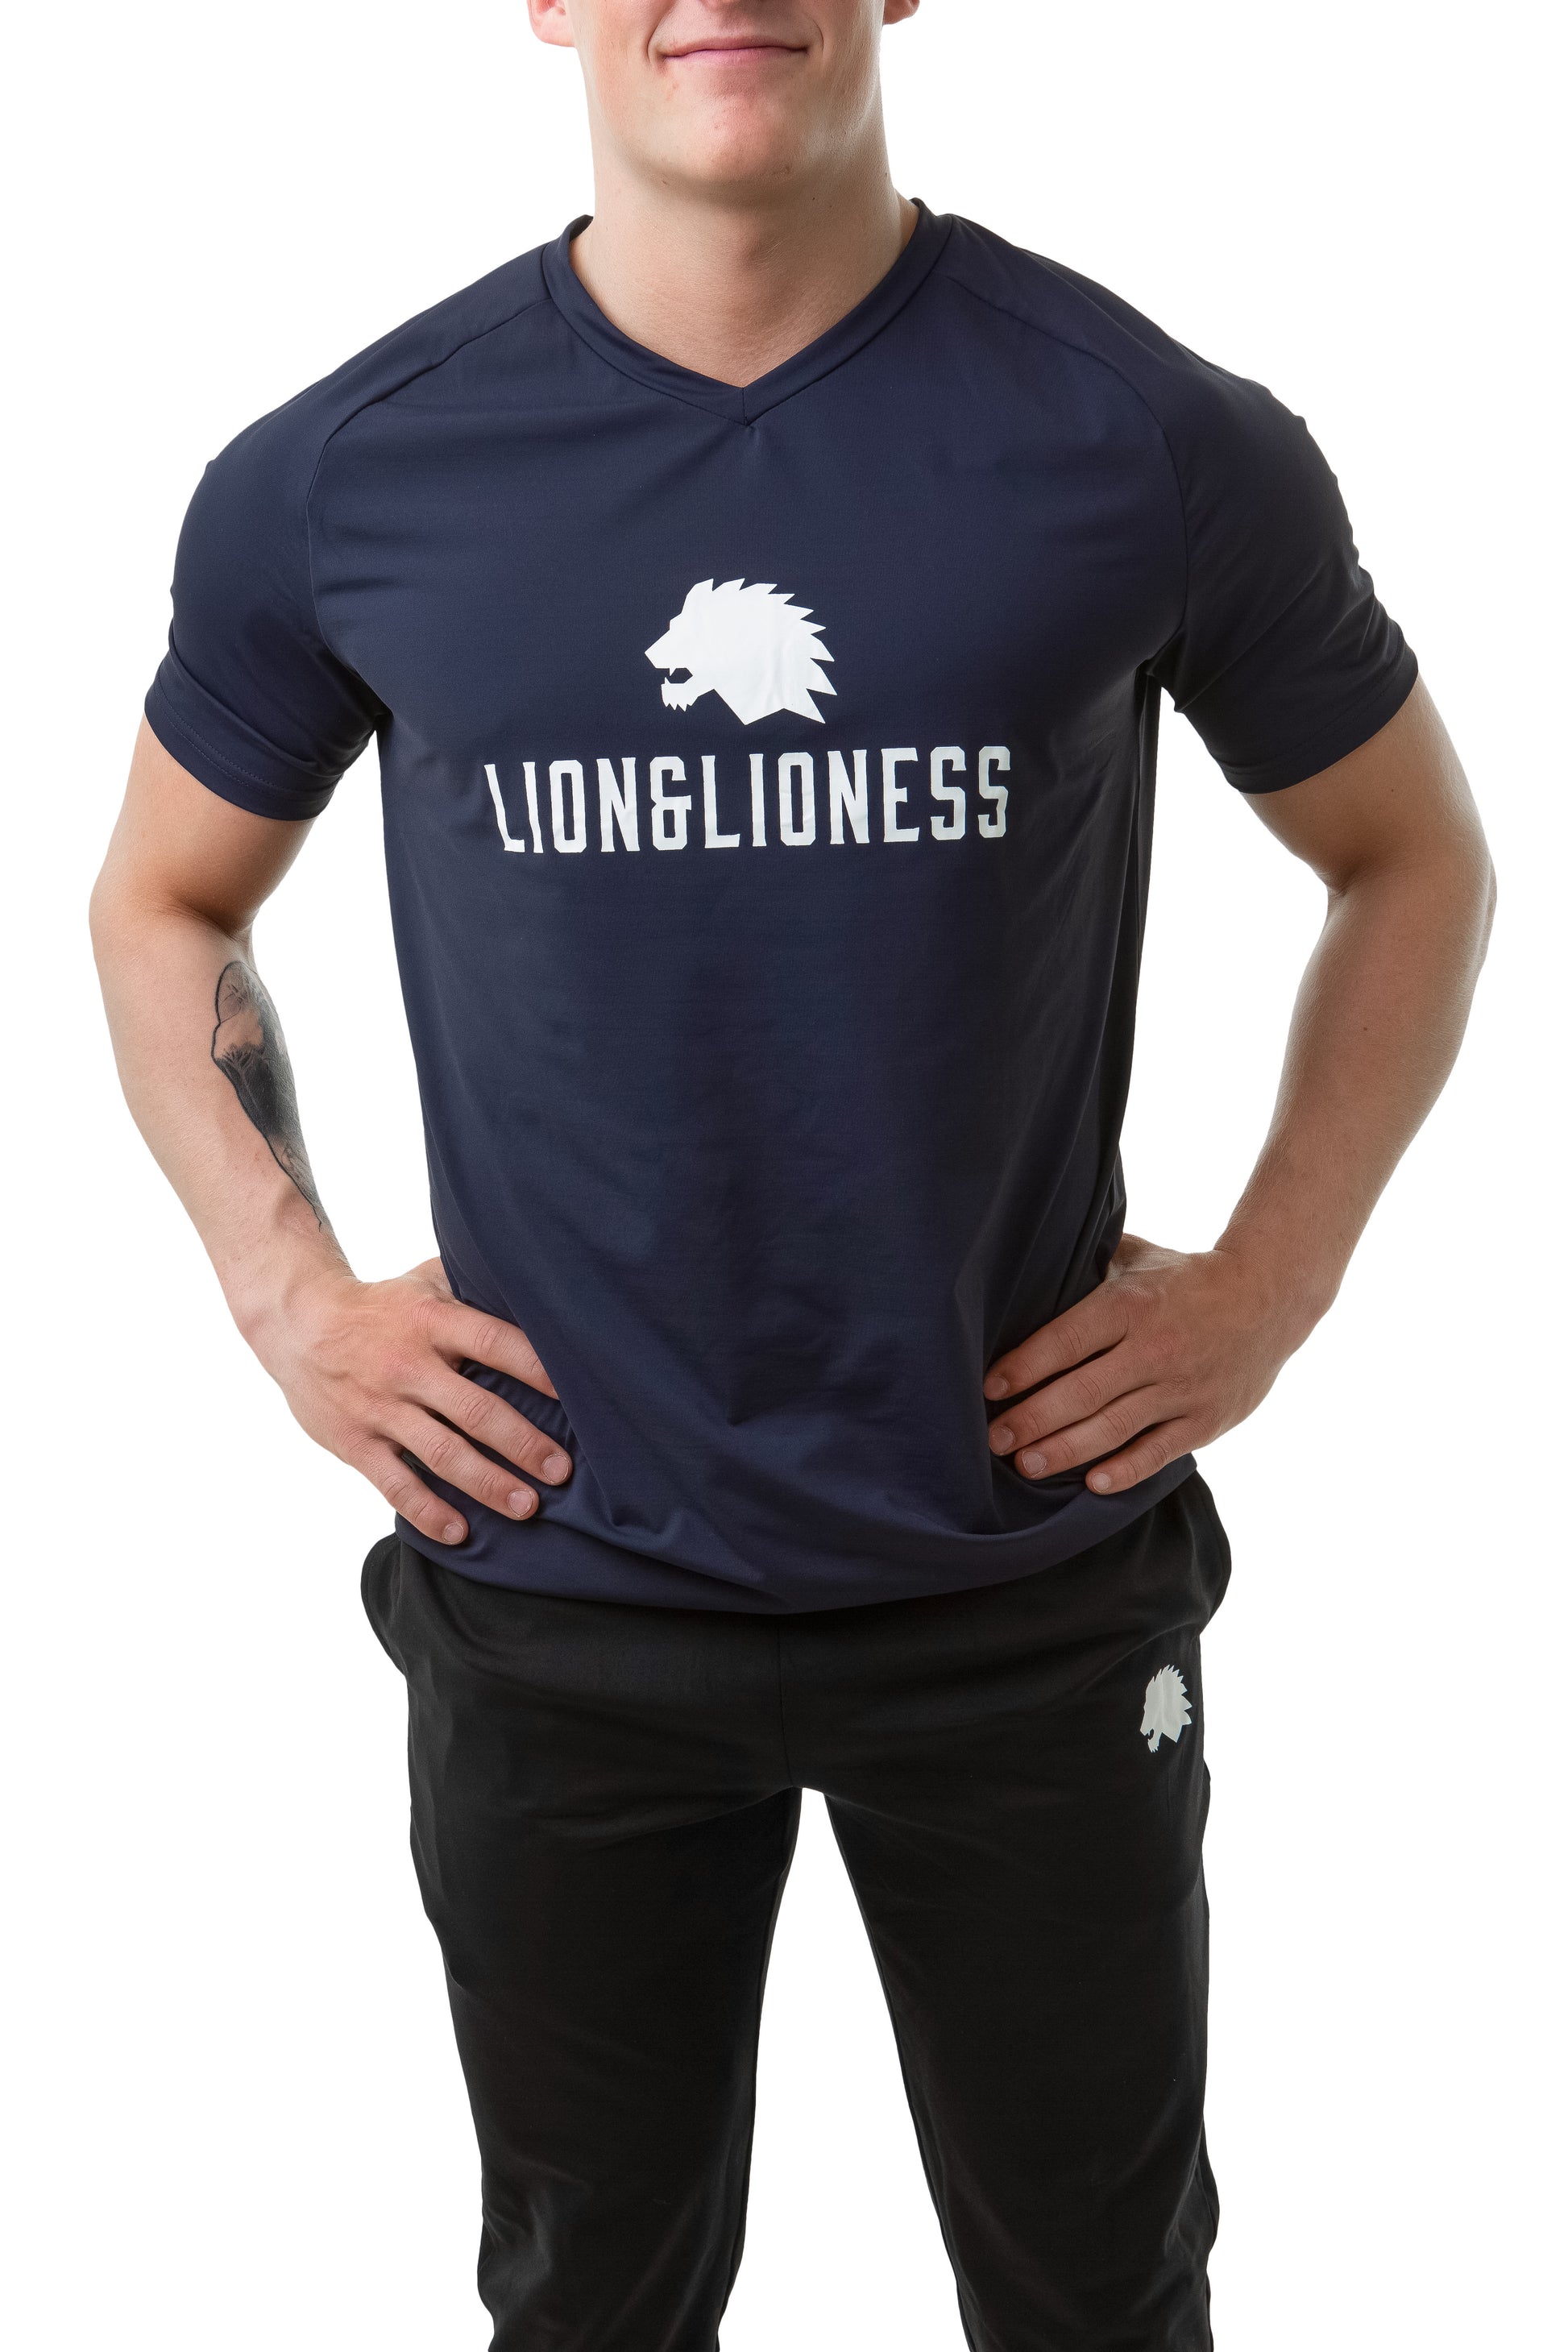 Prolex T-shirt - LION&LIONESS